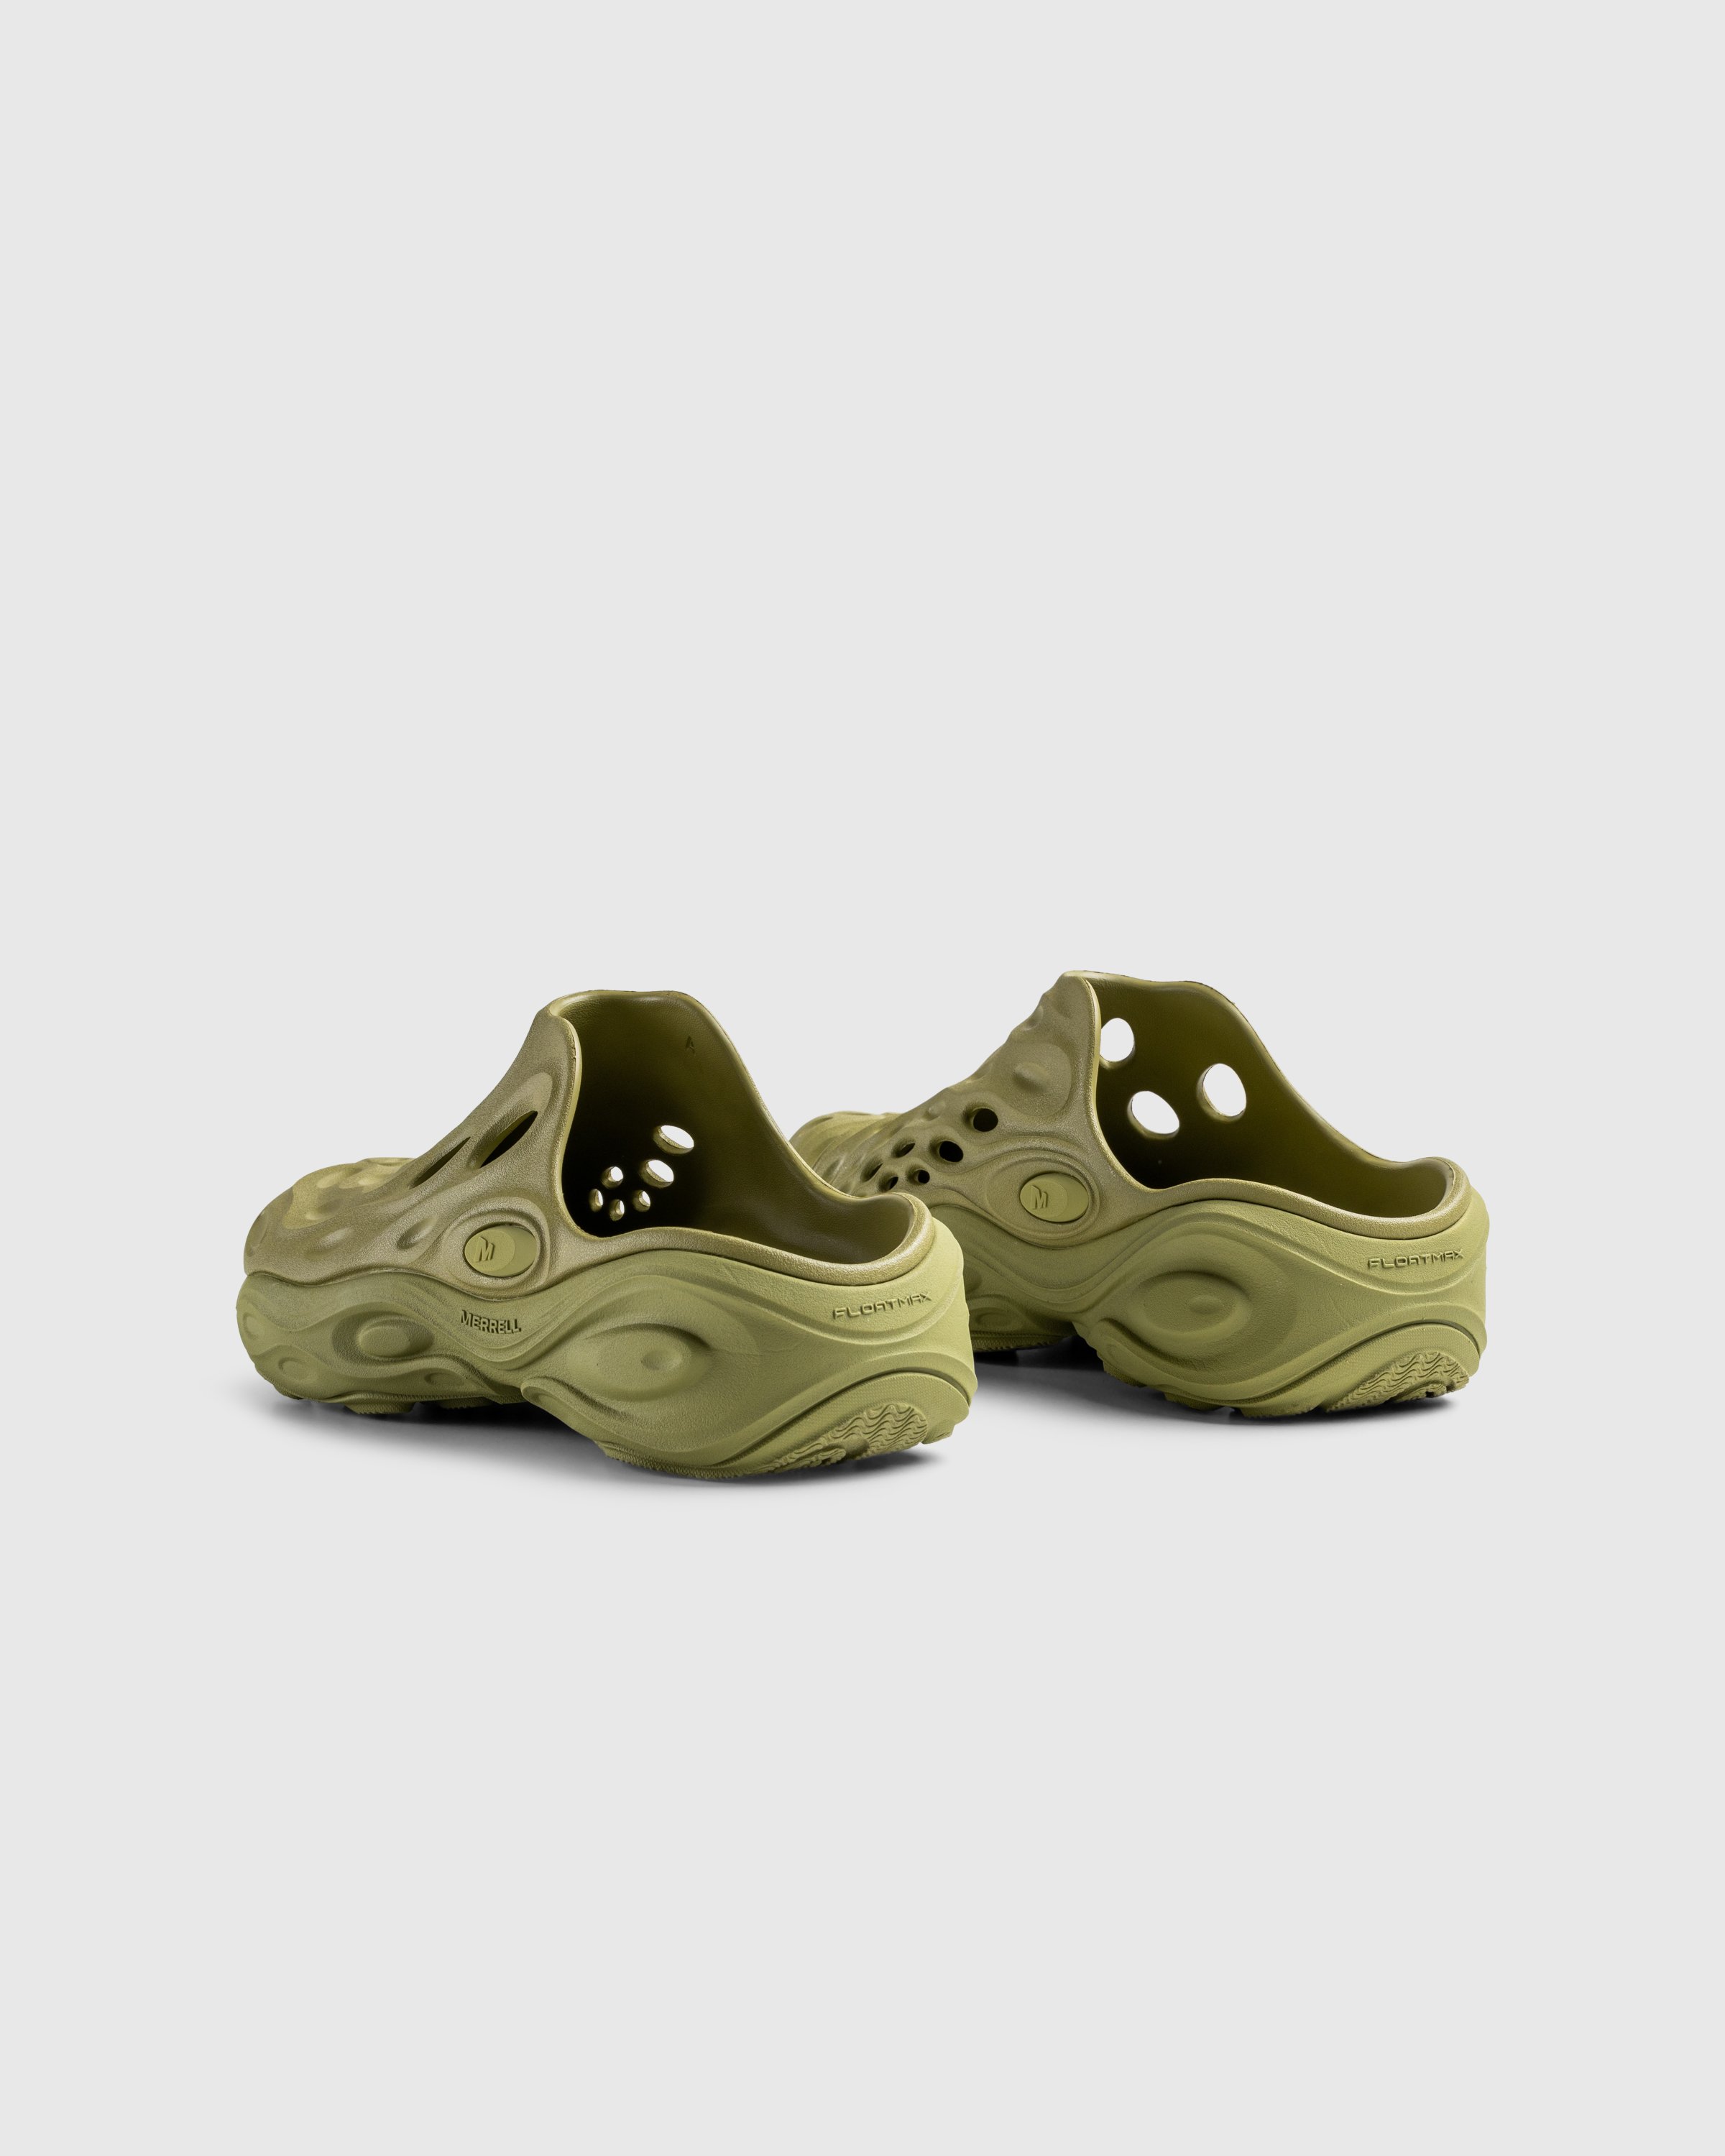 Merrell - HYDRO NEXT GEN MULE SE/TRIPLE MOSSTONE - Footwear - Green - Image 4